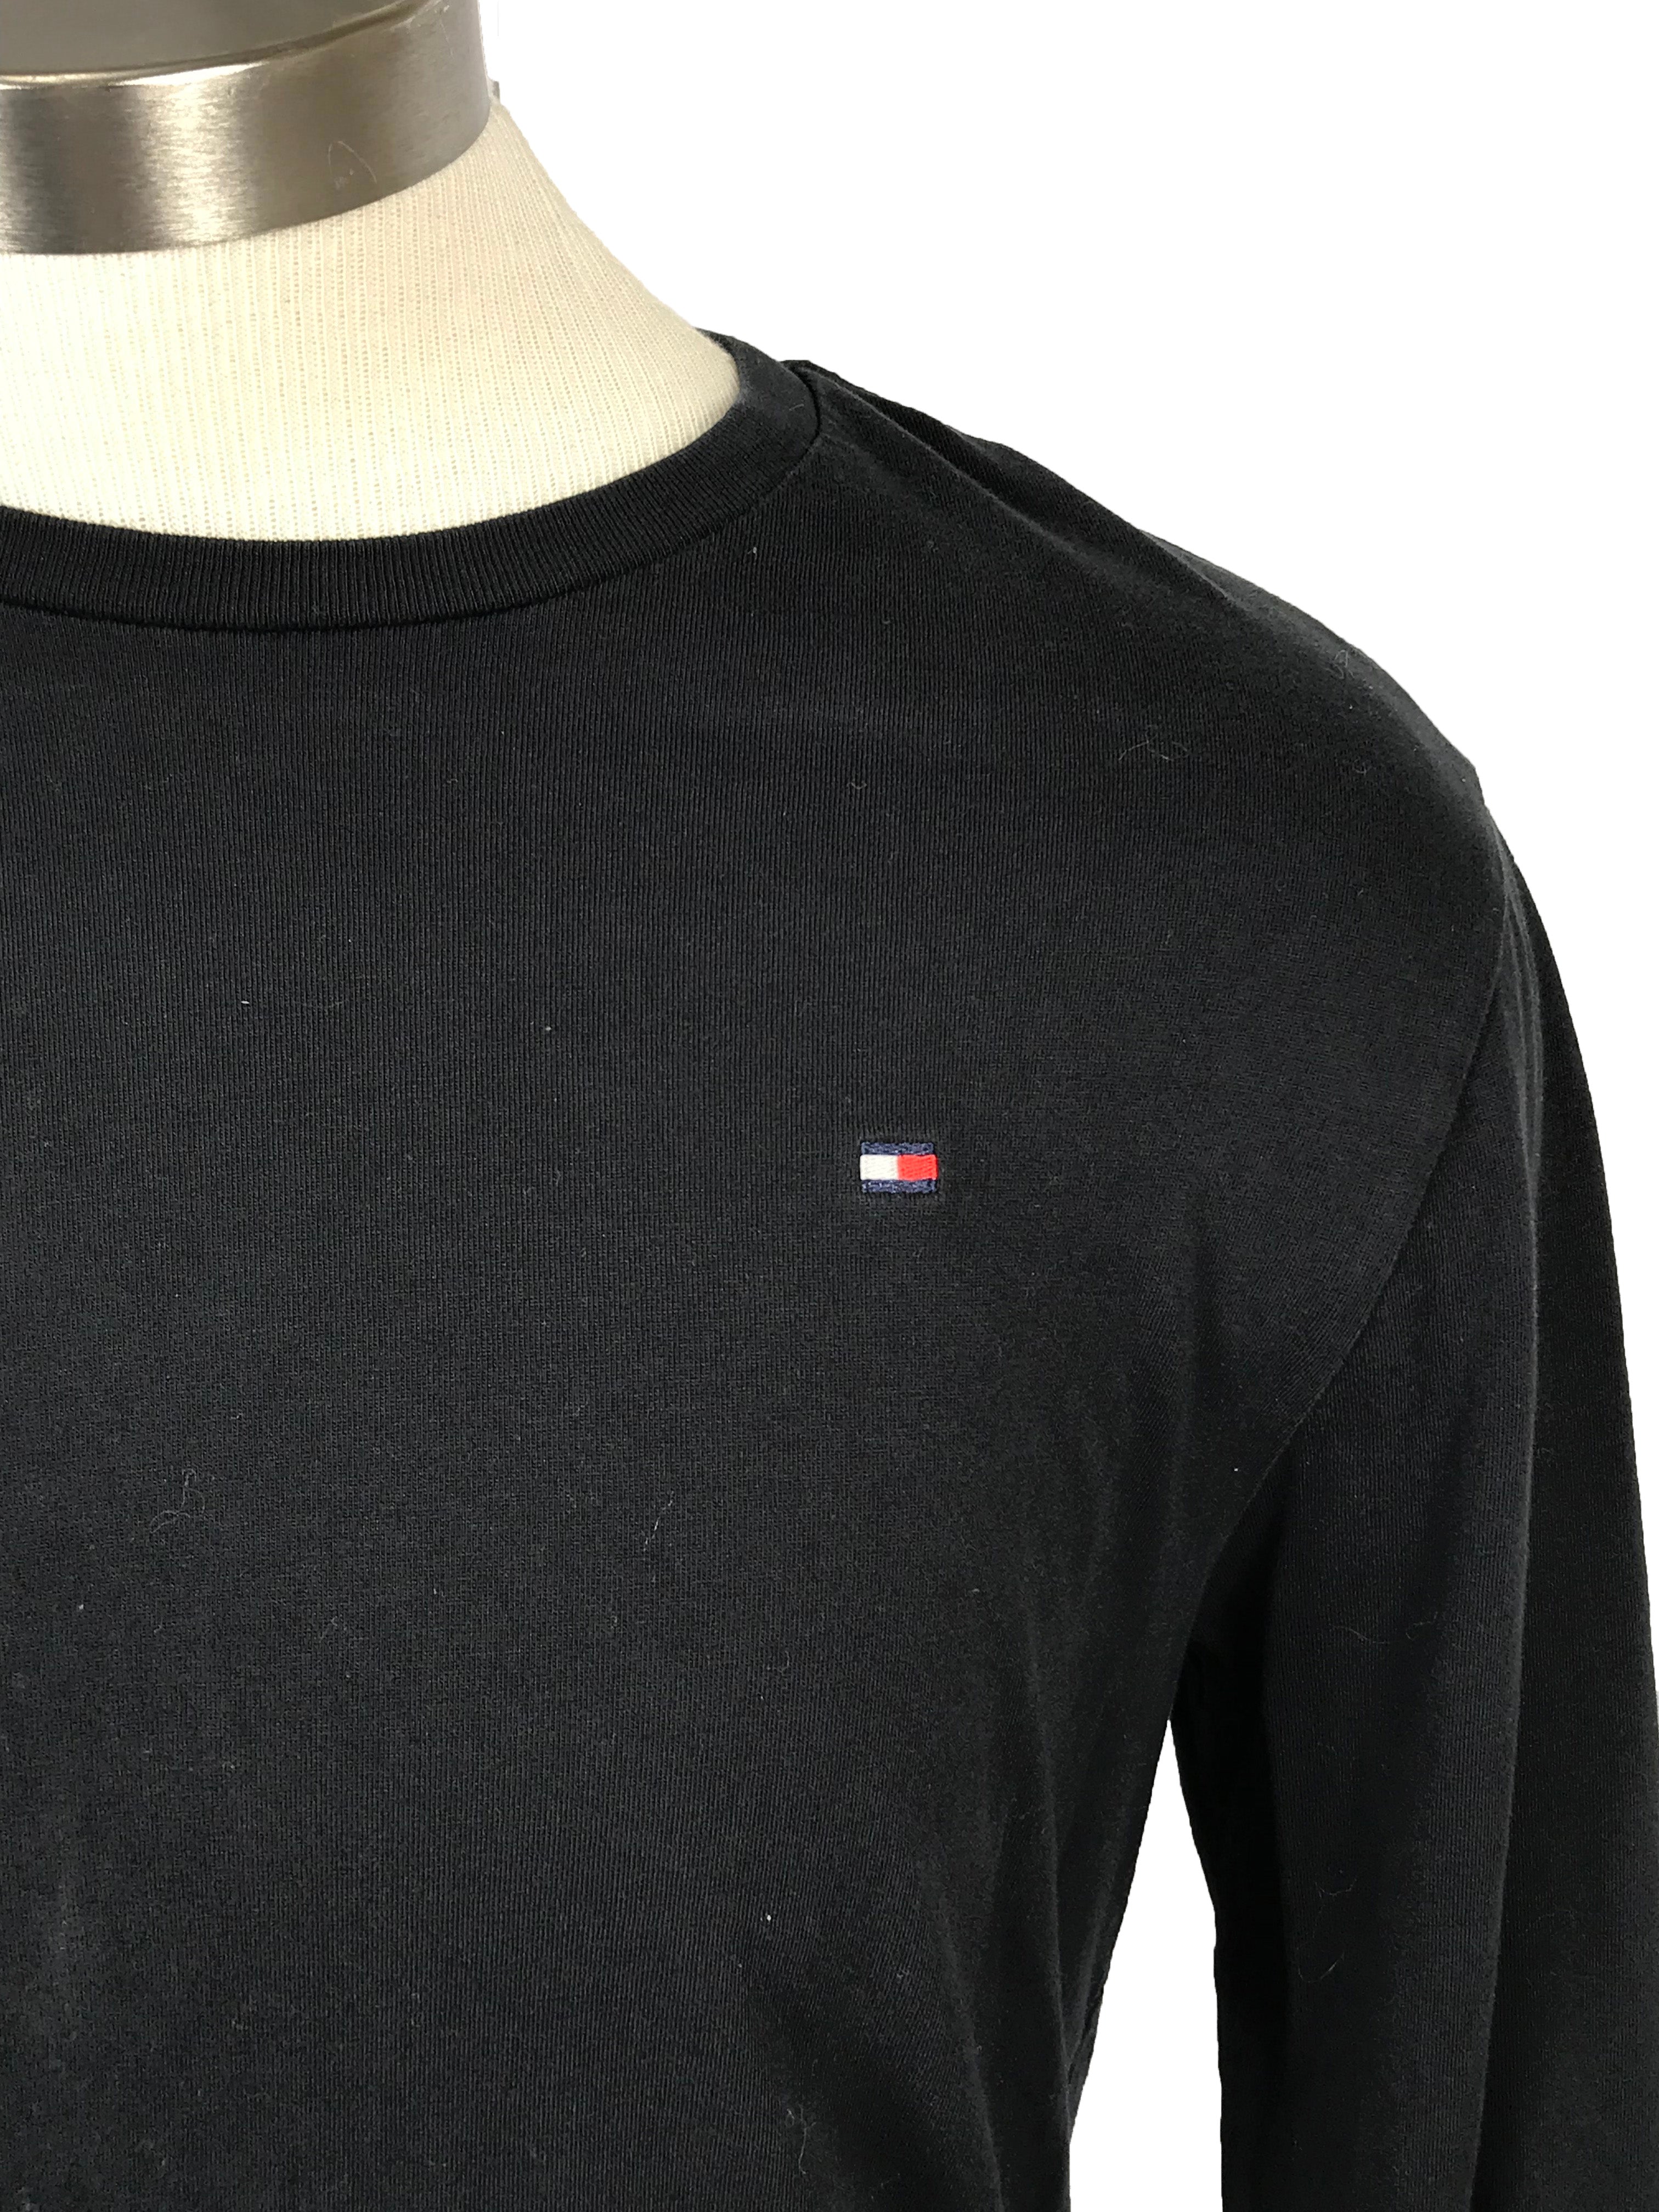 Tommy Hilfiger Long Sleeve Shirt Men's Size S/P MSU Surplus Store